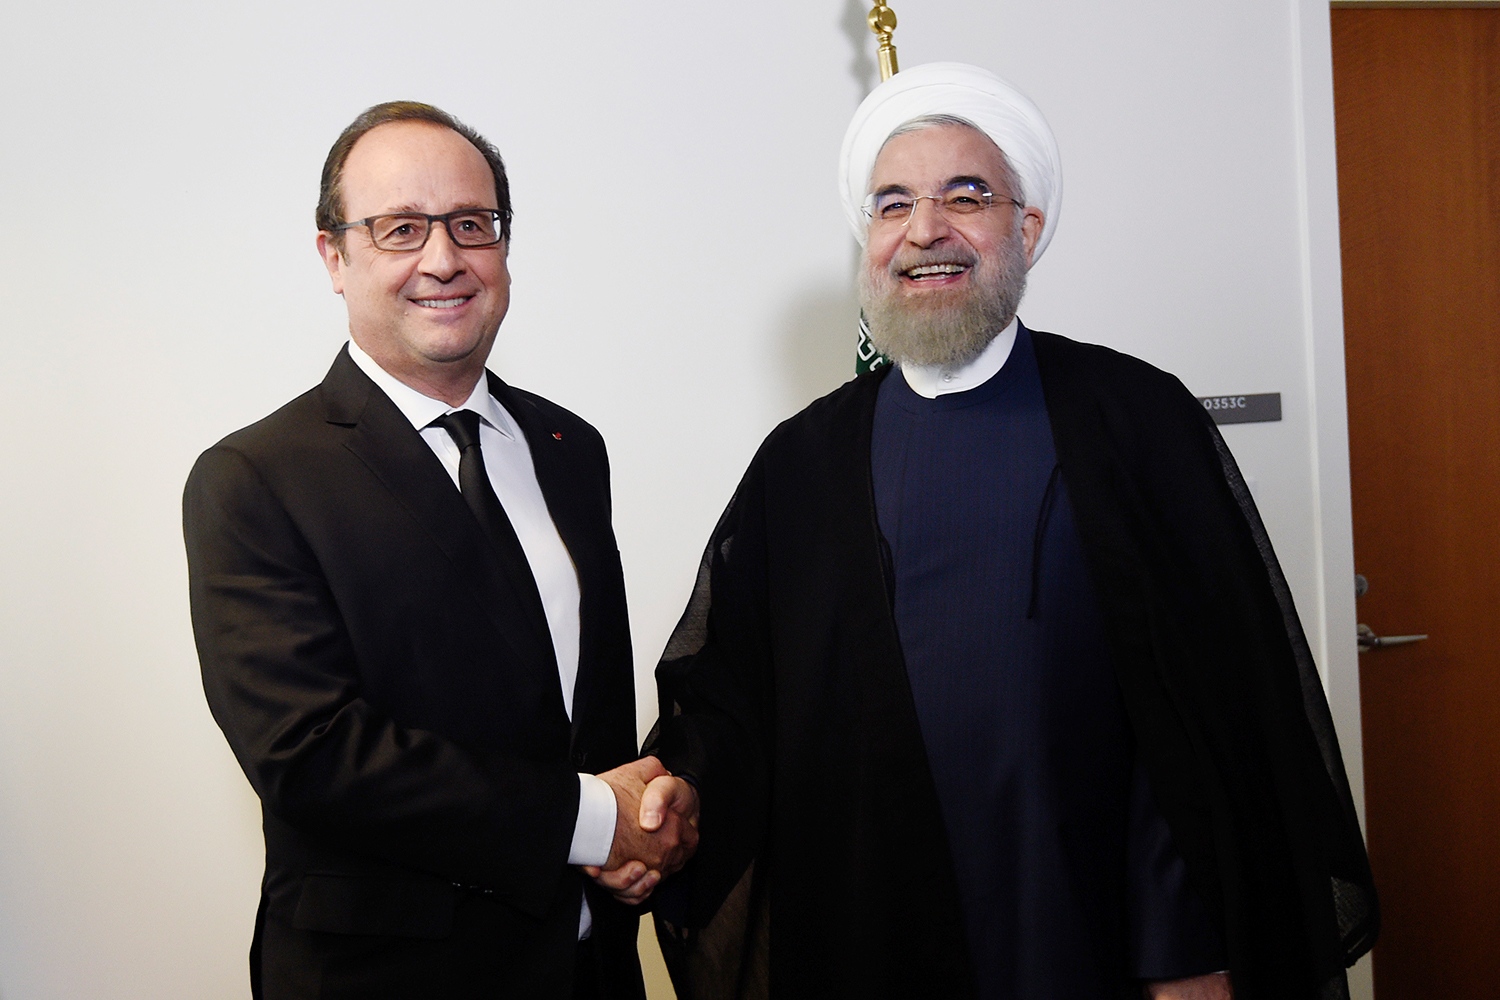 Reunión entre Hollande y Rouhani se suspende ya que Francia se niega a servir carne halal